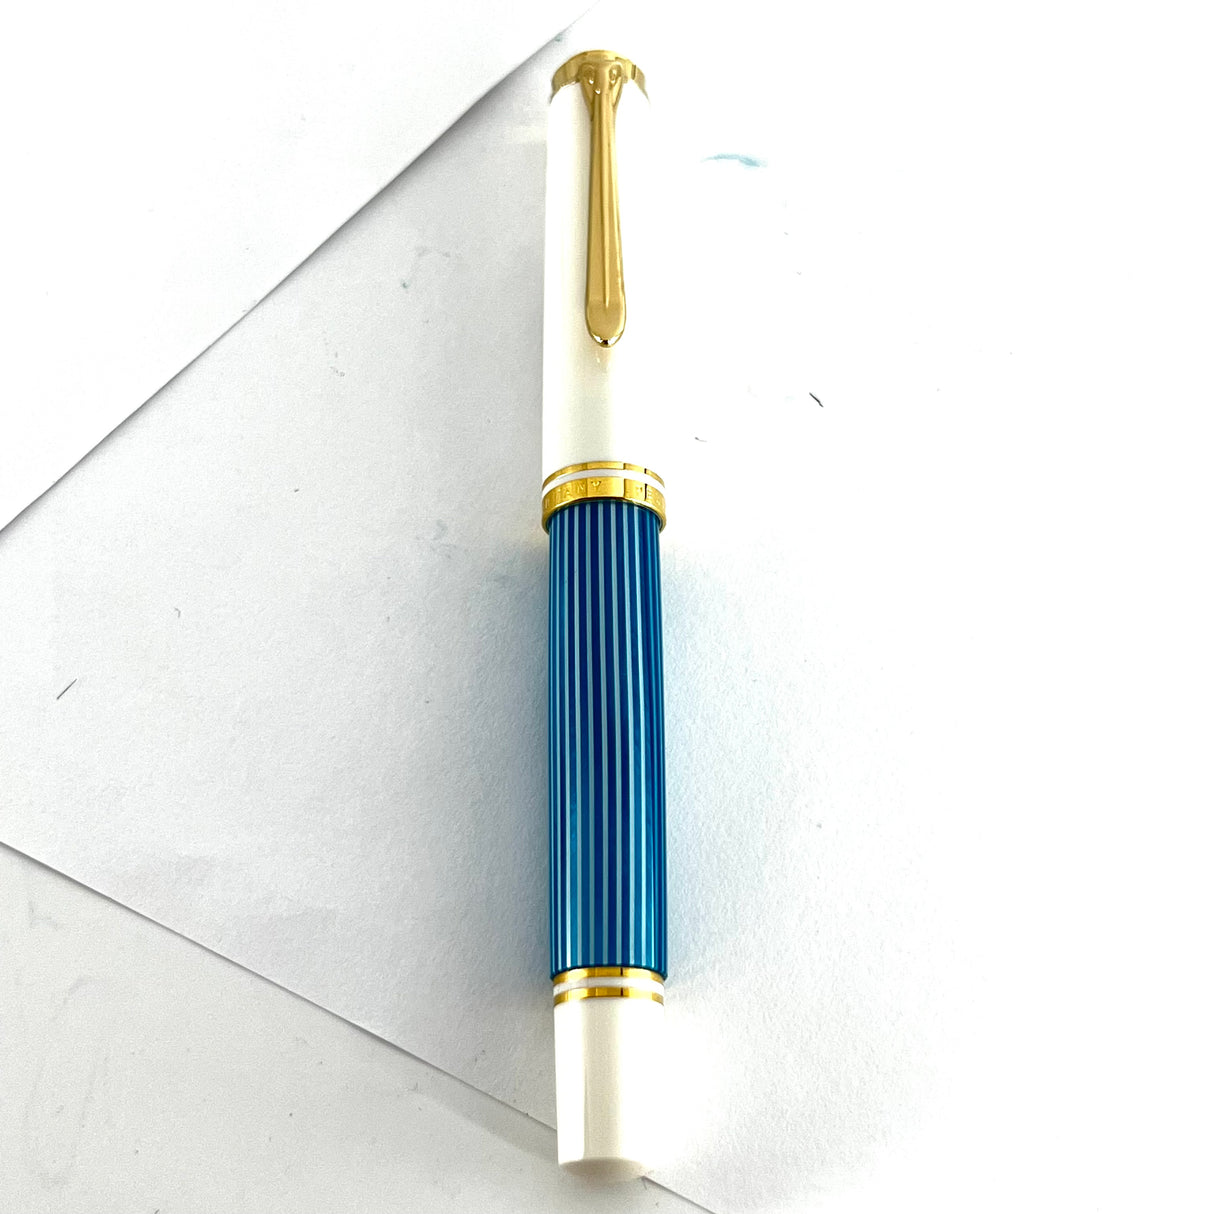 Pelikan M600 Turquoise-White Striped Fountain Pen